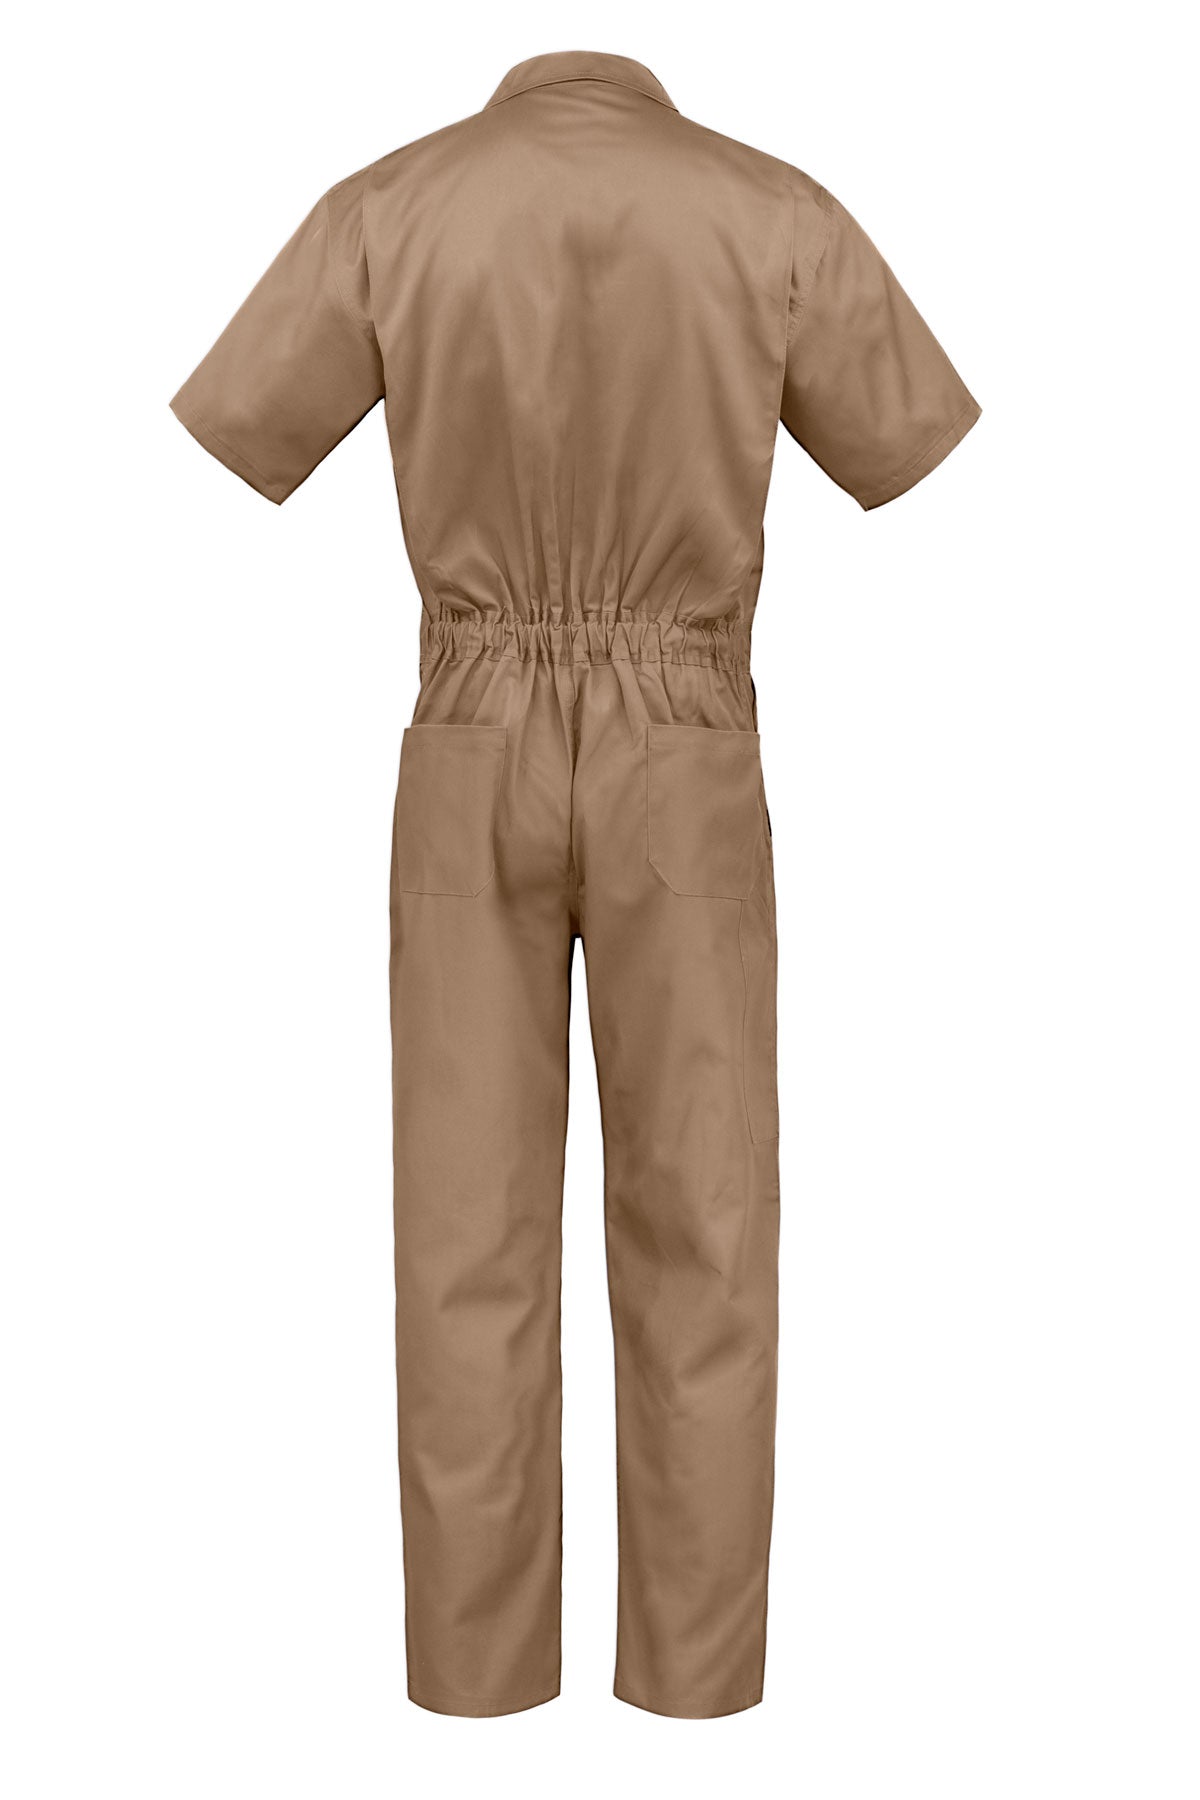 Kolossus Coveralls for Men Short Sleeve – Blended – Zippered – Pockets –  Jumpsuit for men